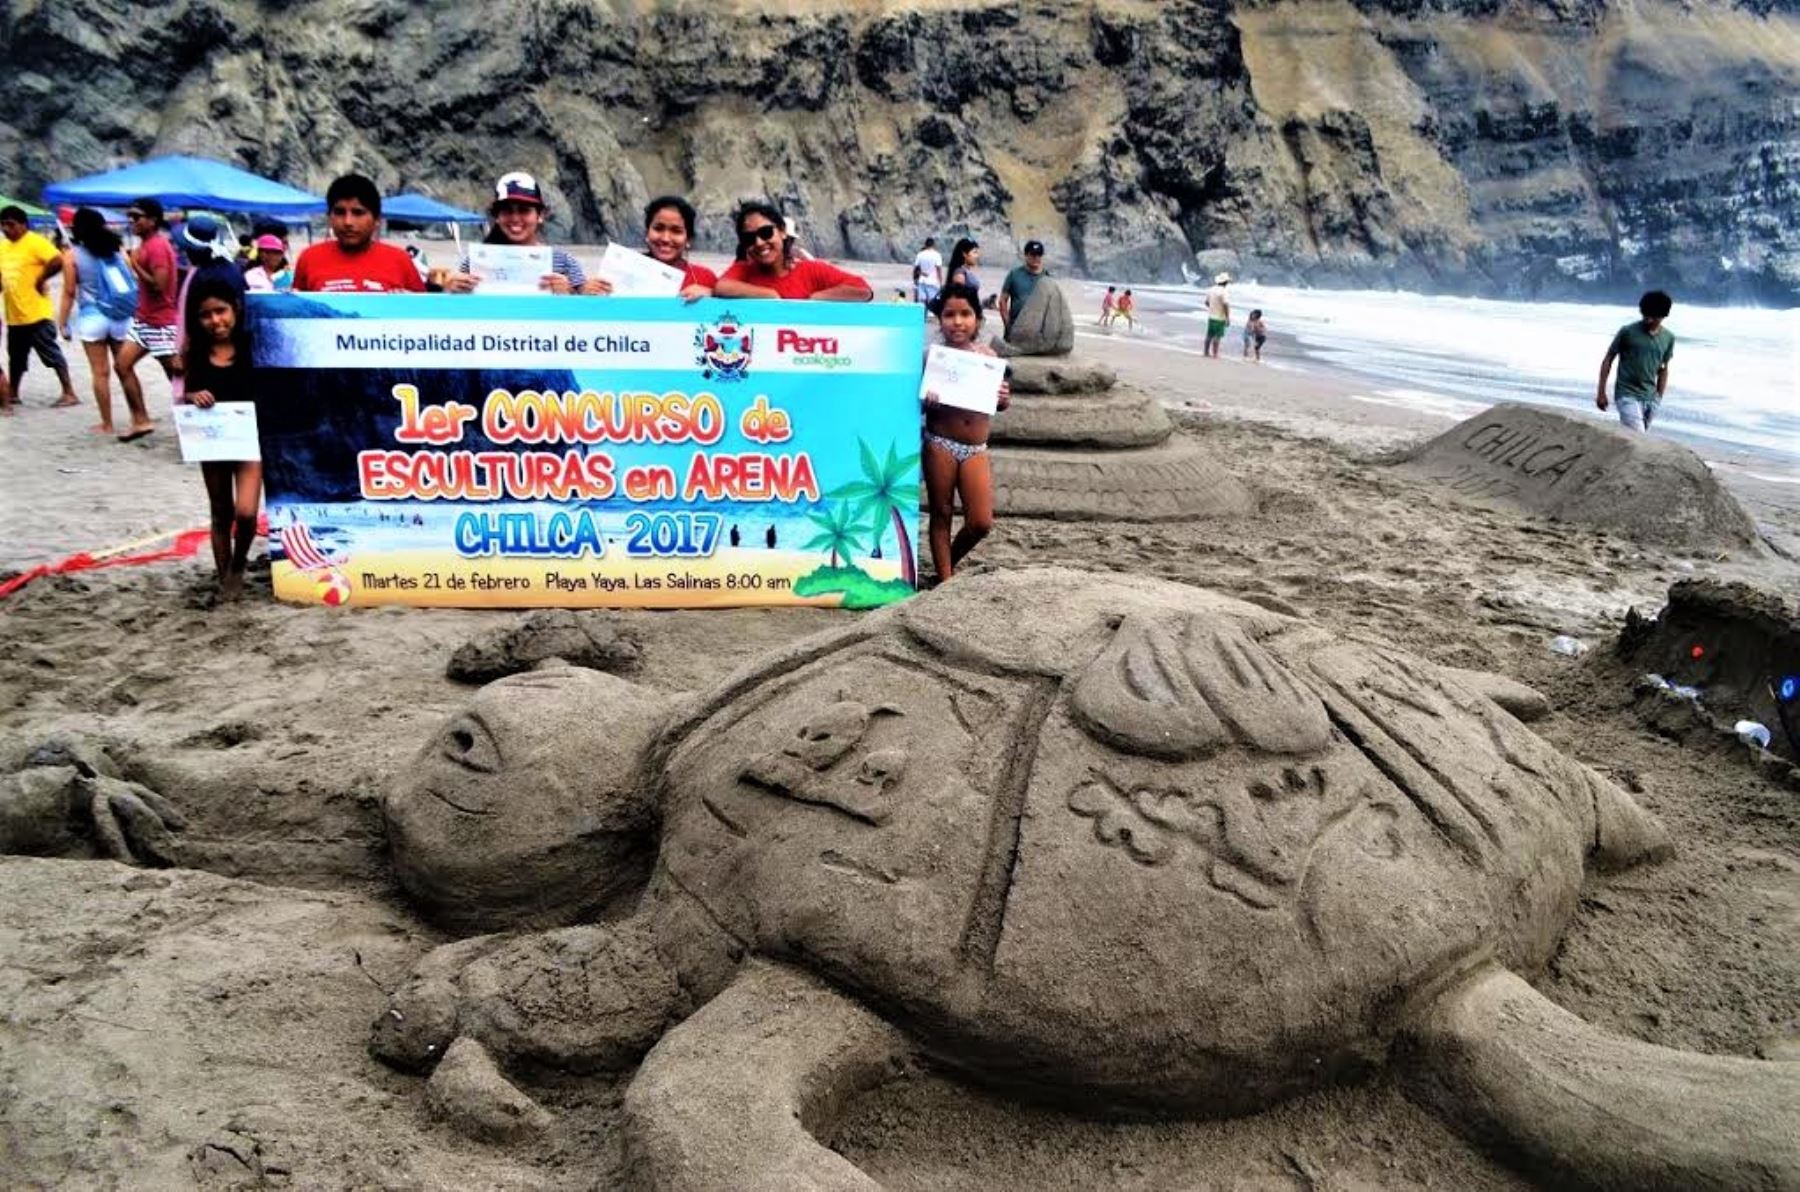 El objetivo fue promover el arte de las esculturas en arena como un instrumento educativo que permita sensibilizar a la población y visitantes sobre la protección del medio ambiente y el cuidado de las playas y el ecosistema marino.